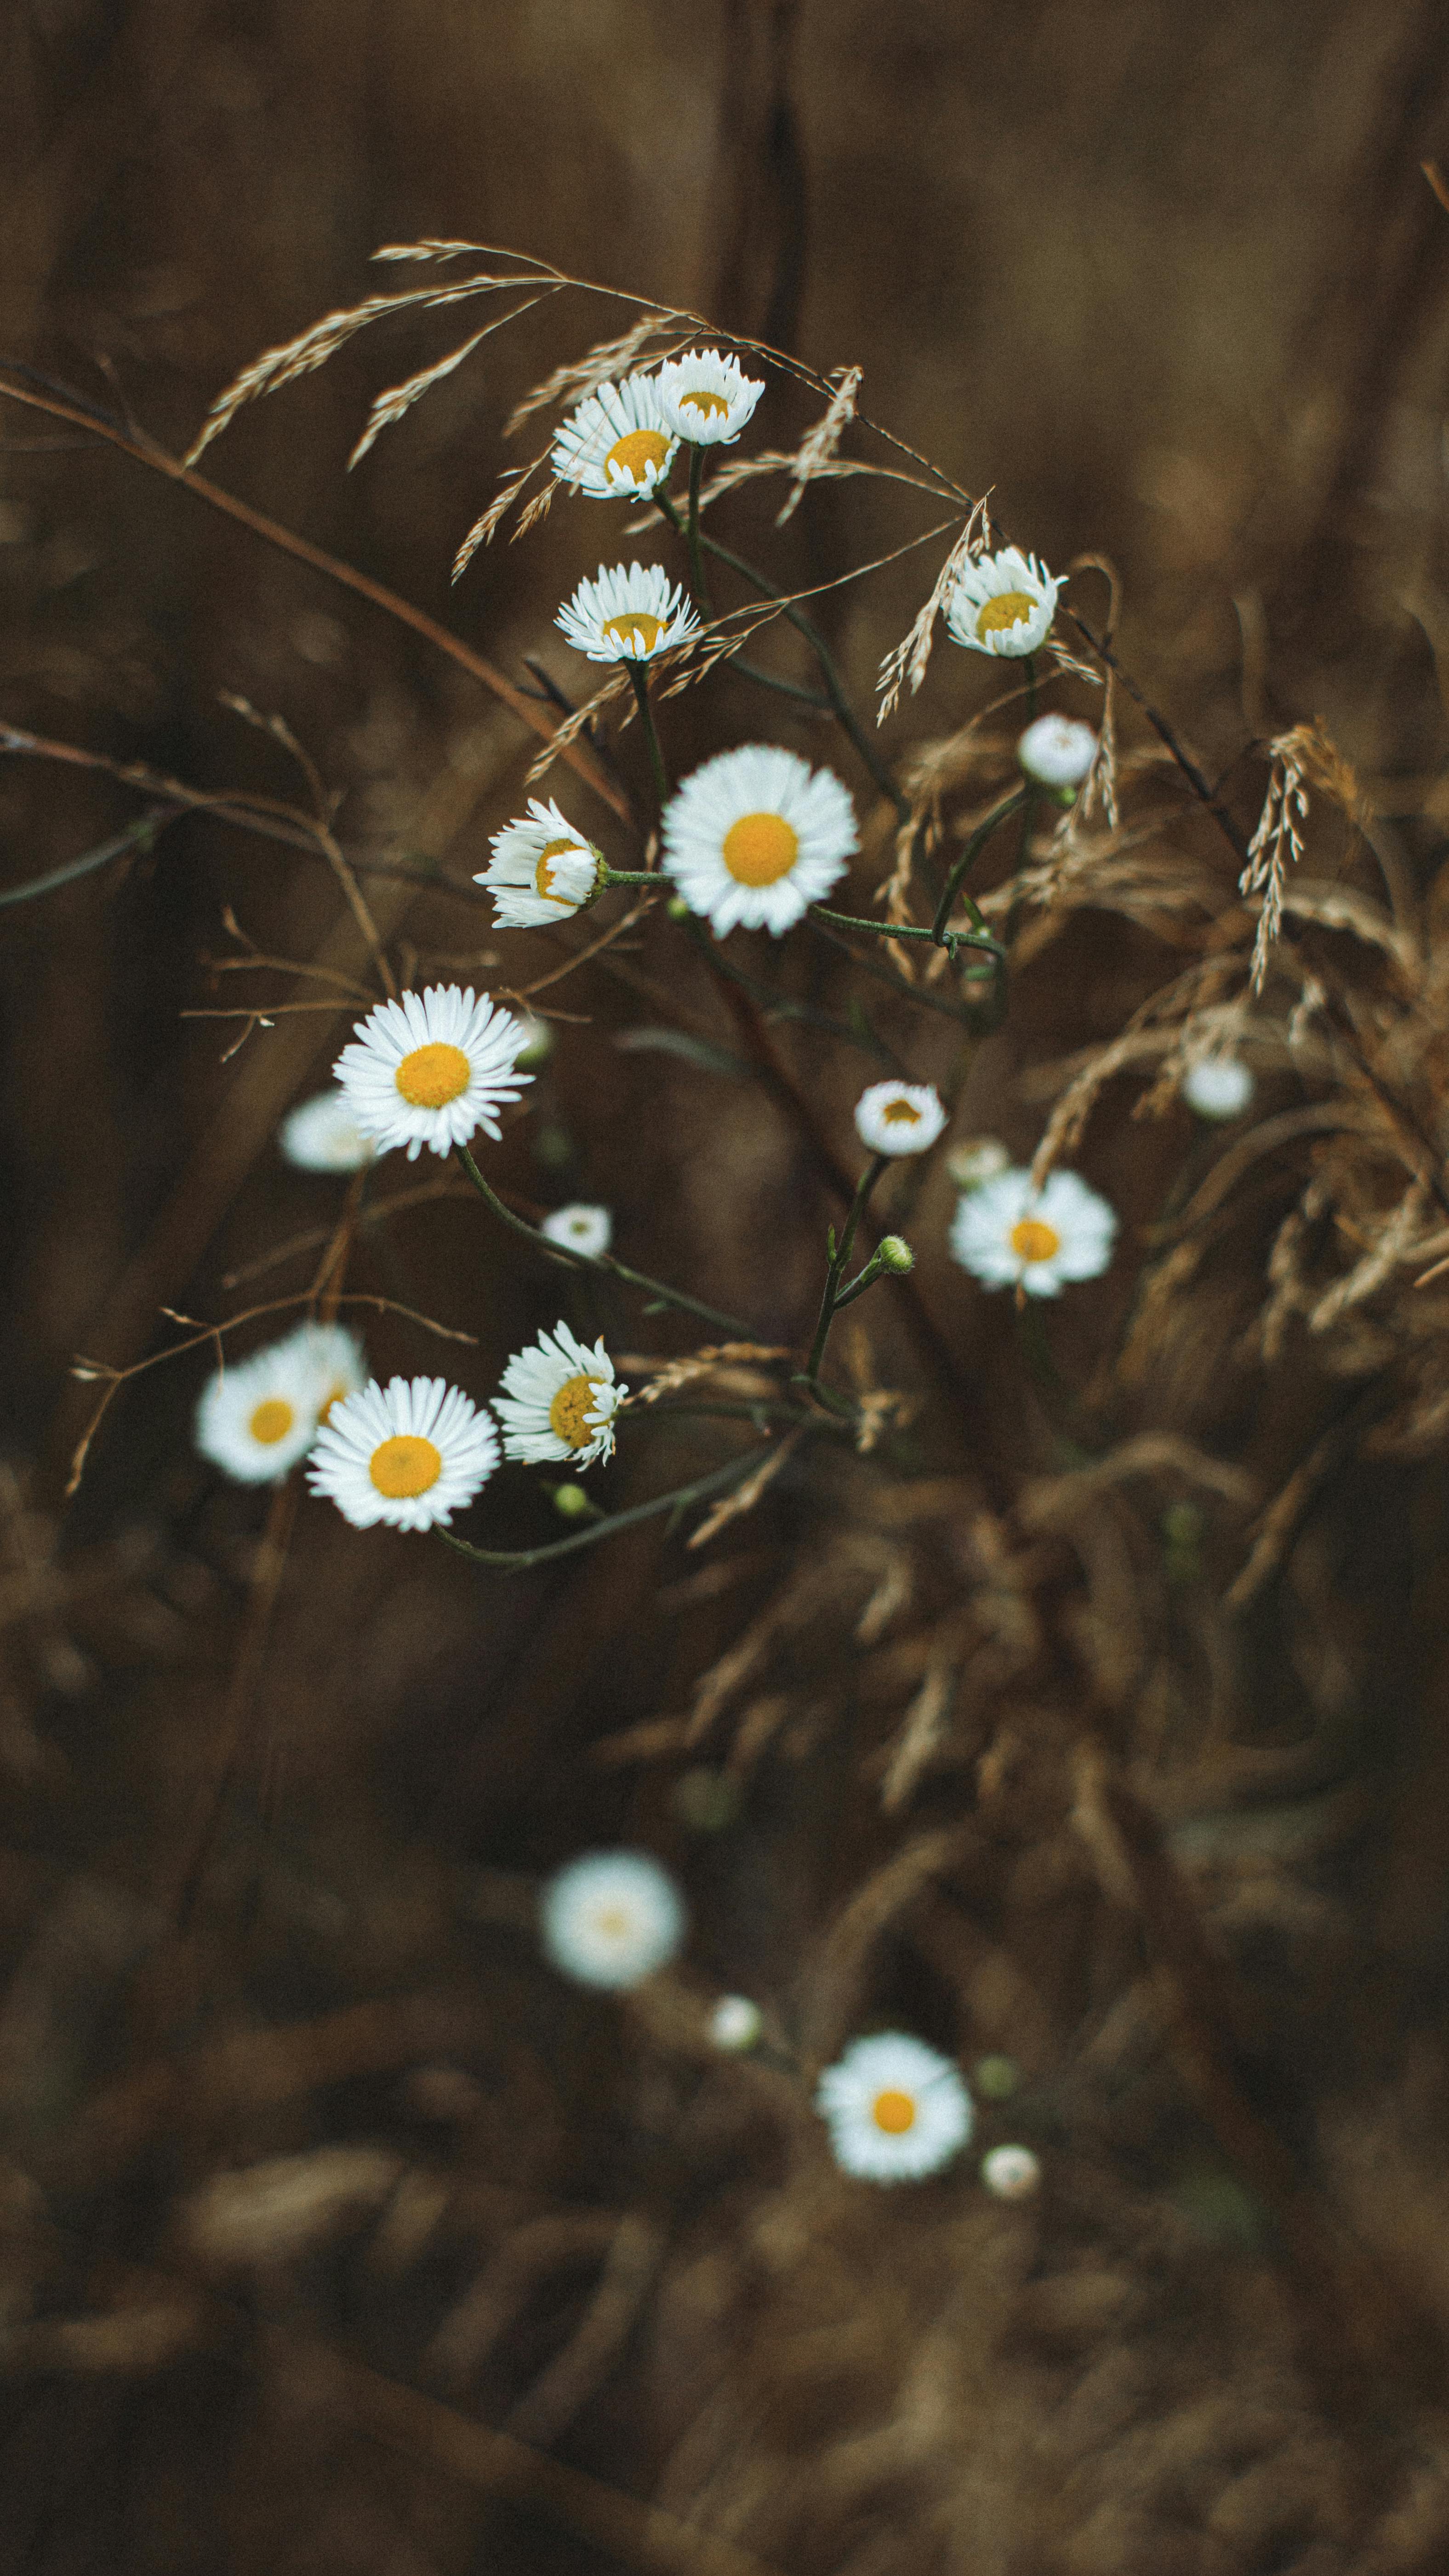 Hoa cúc trắng, nở: Bức ảnh này sẽ khiến bạn cảm thấy hài lòng và hạnh phúc với sự tươi tắn và tươi sáng của hoa cúc trắng. Hình ảnh này sẽ đưa bạn đến với một thế giới tràn đầy tình yêu và đầy hy vọng.